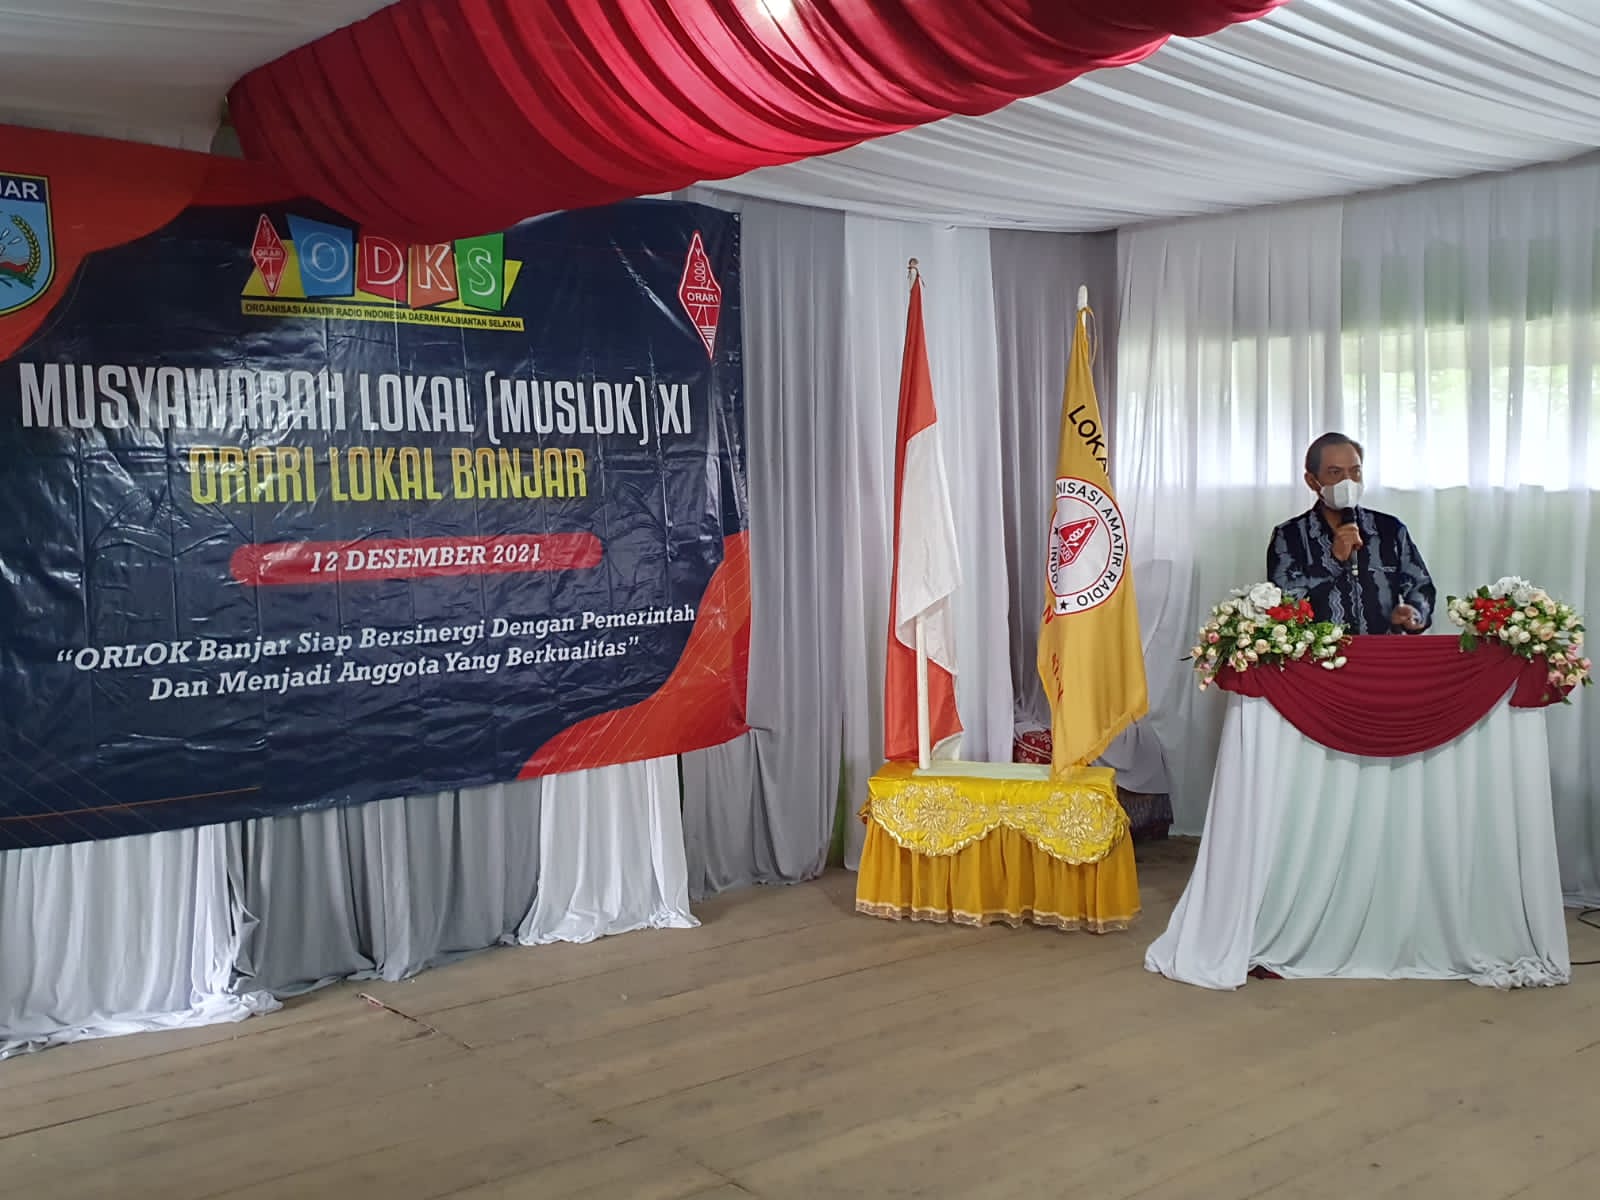 Musyawarah Lokal XI, di MTs Izharil Ulum, Desa Melayu Tengah, Kec. Martapura Timur